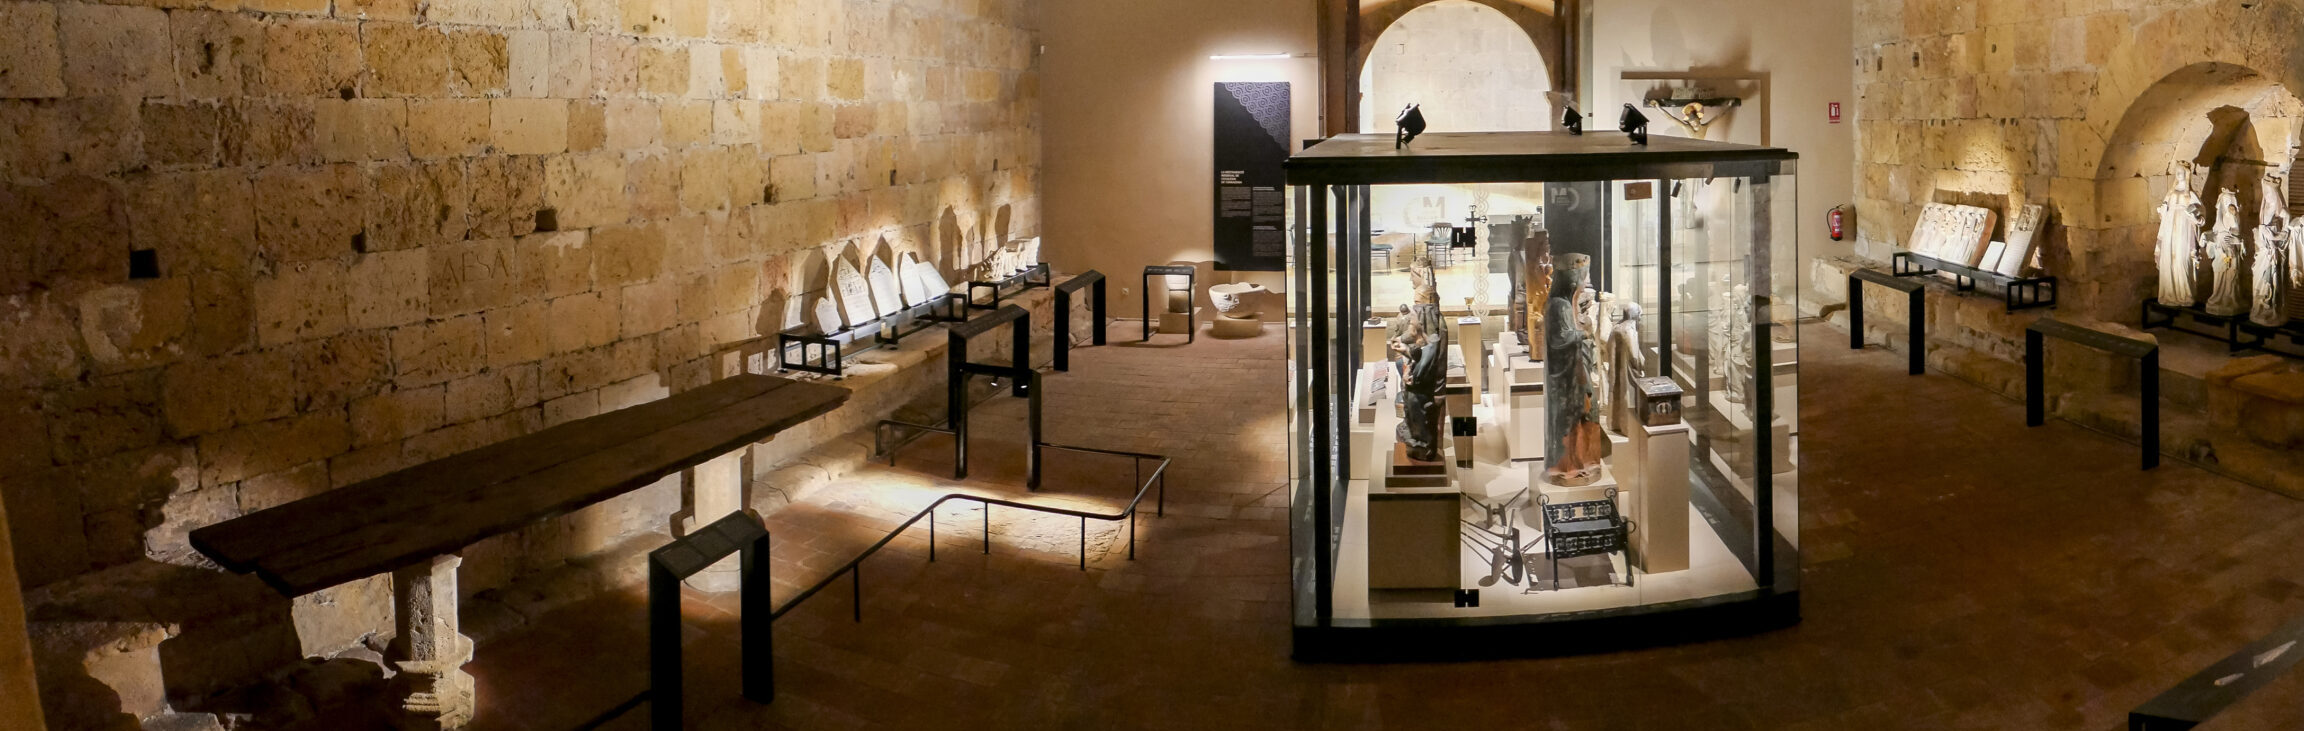 MUSEU DIOCESÀ DE TARRAGONA		Tarragona	Tarragona	Museo